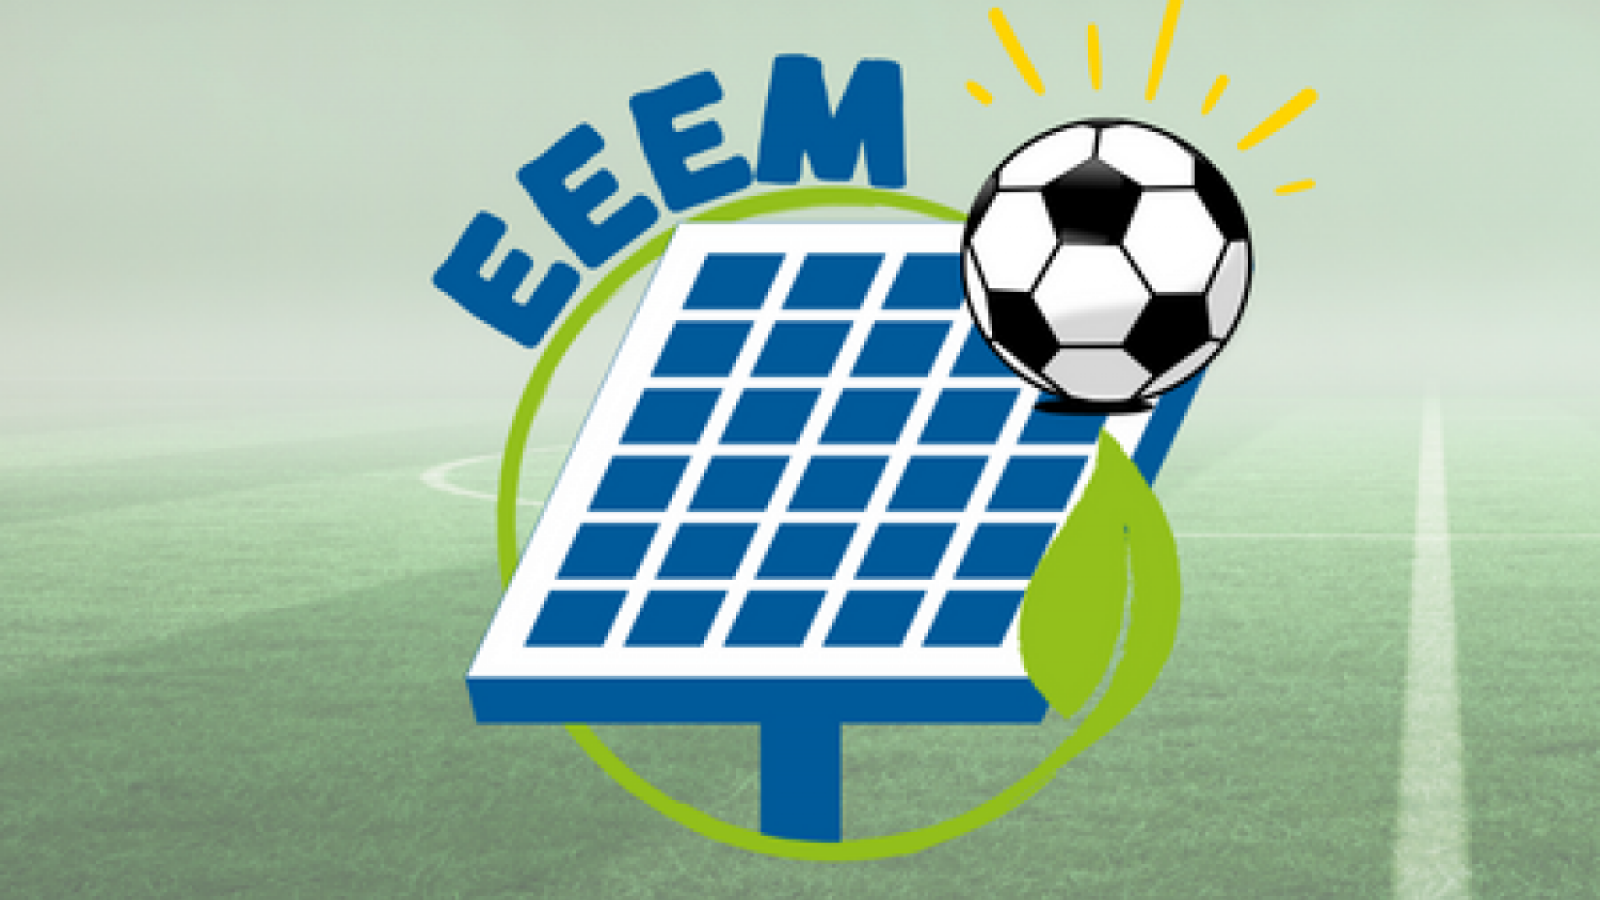 Sujetbild zur Erneuerbaren Energie Europameisterschaft, PV-Anlage und Fußball